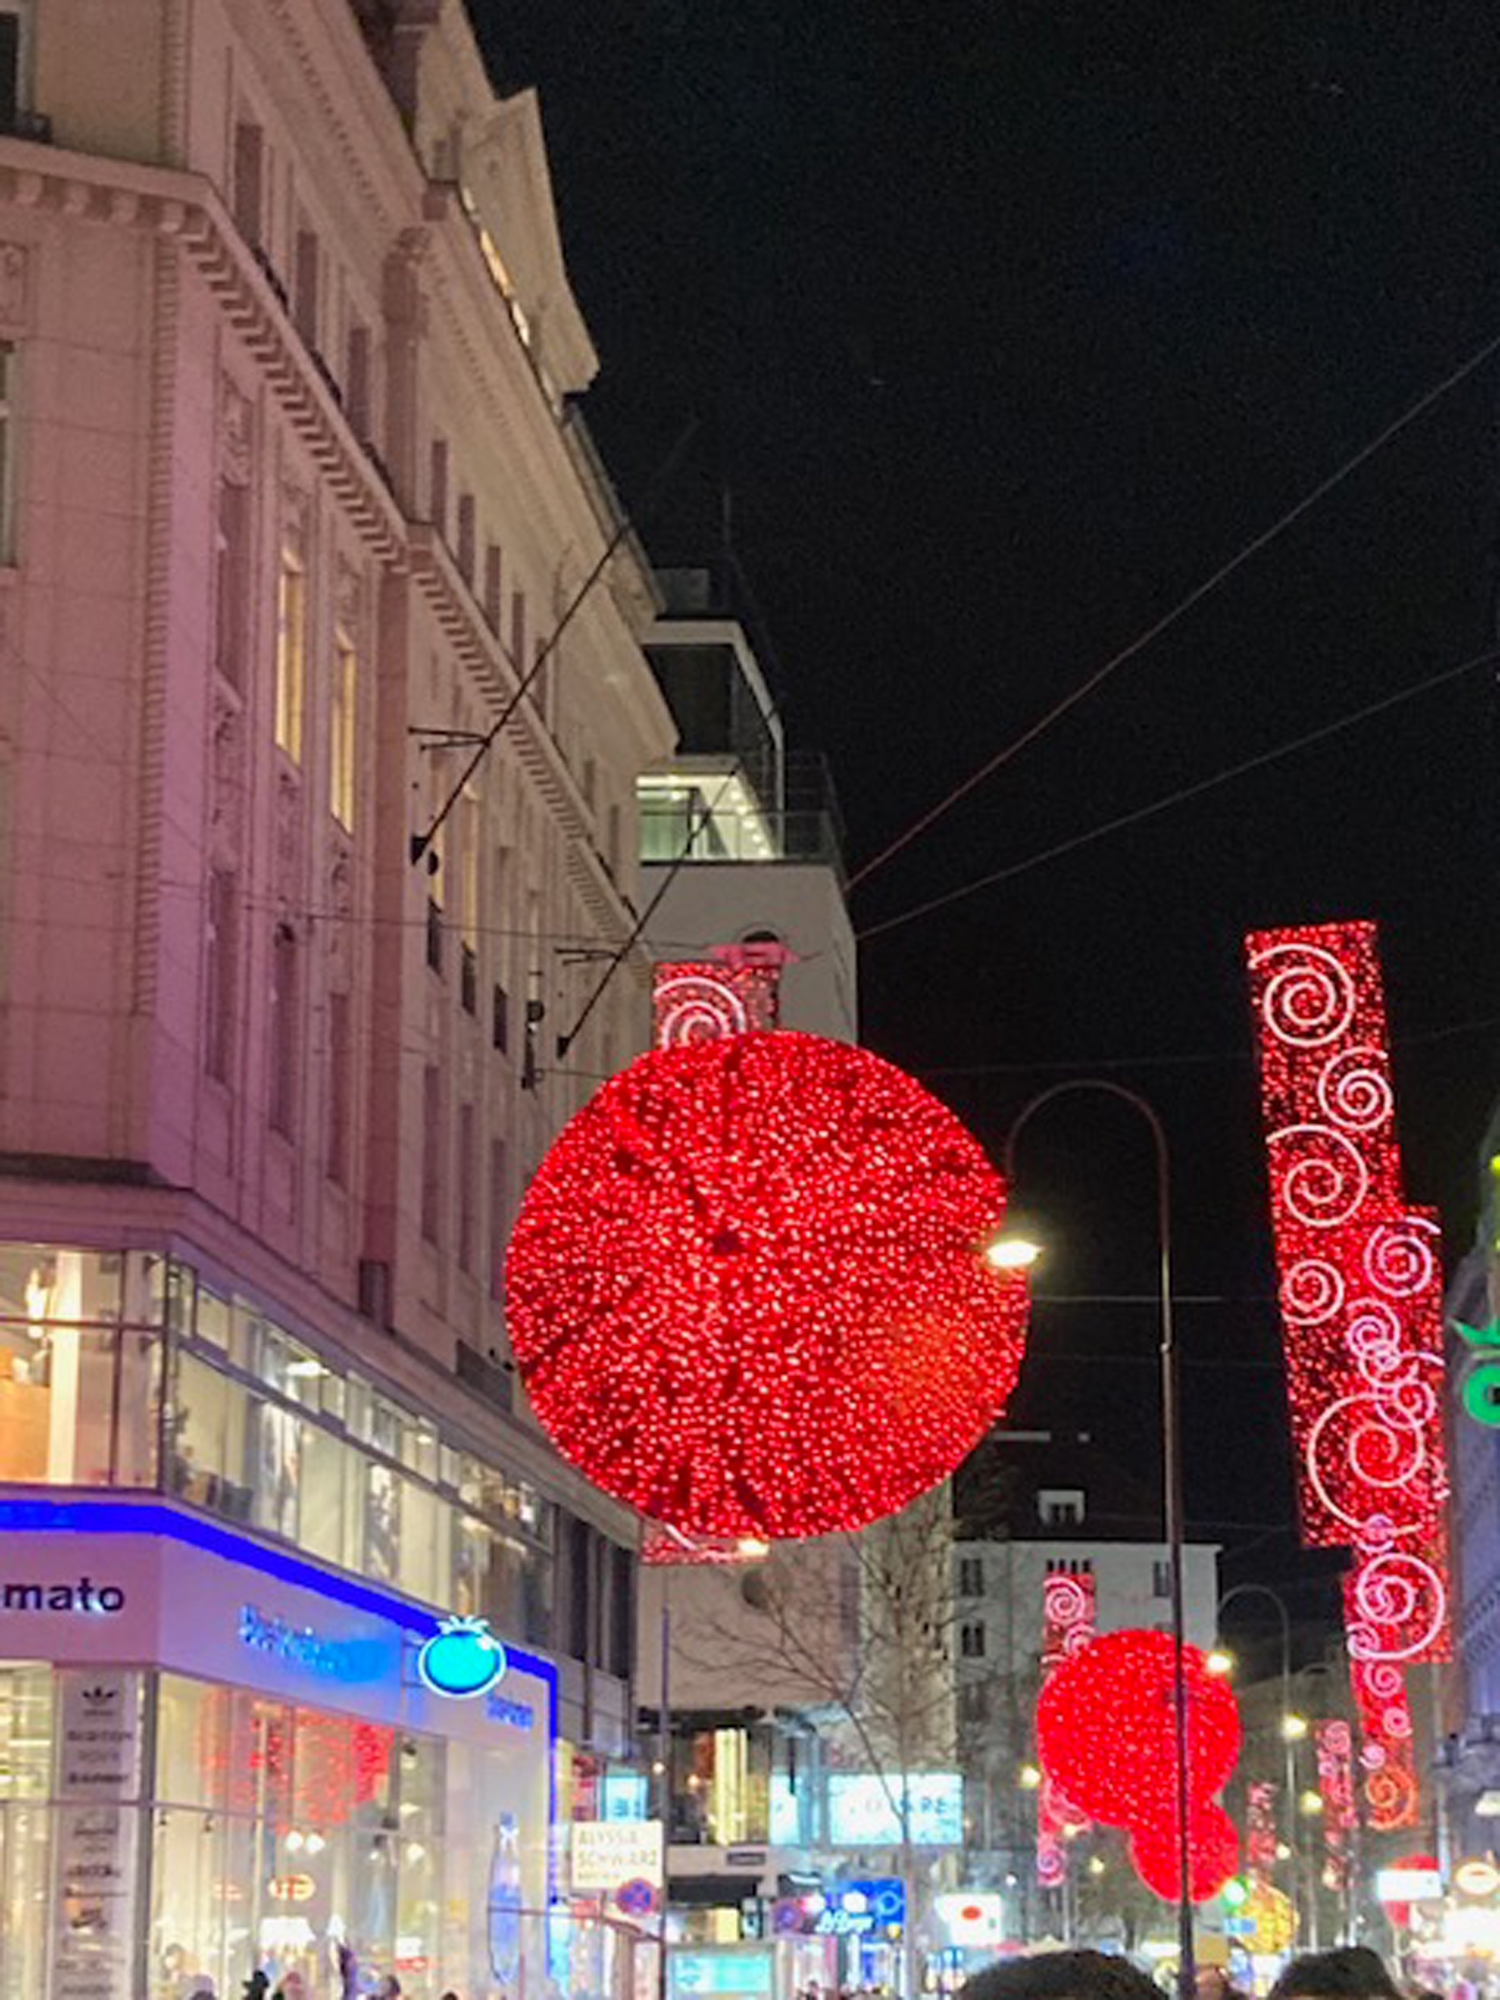 Grandioza izmēra sarkanas un mirguļojošas bumbas ved no paša Vīnes centra dziļāk iekšā pilsētas Ziemassvētku gaidīšanas noskaņās.